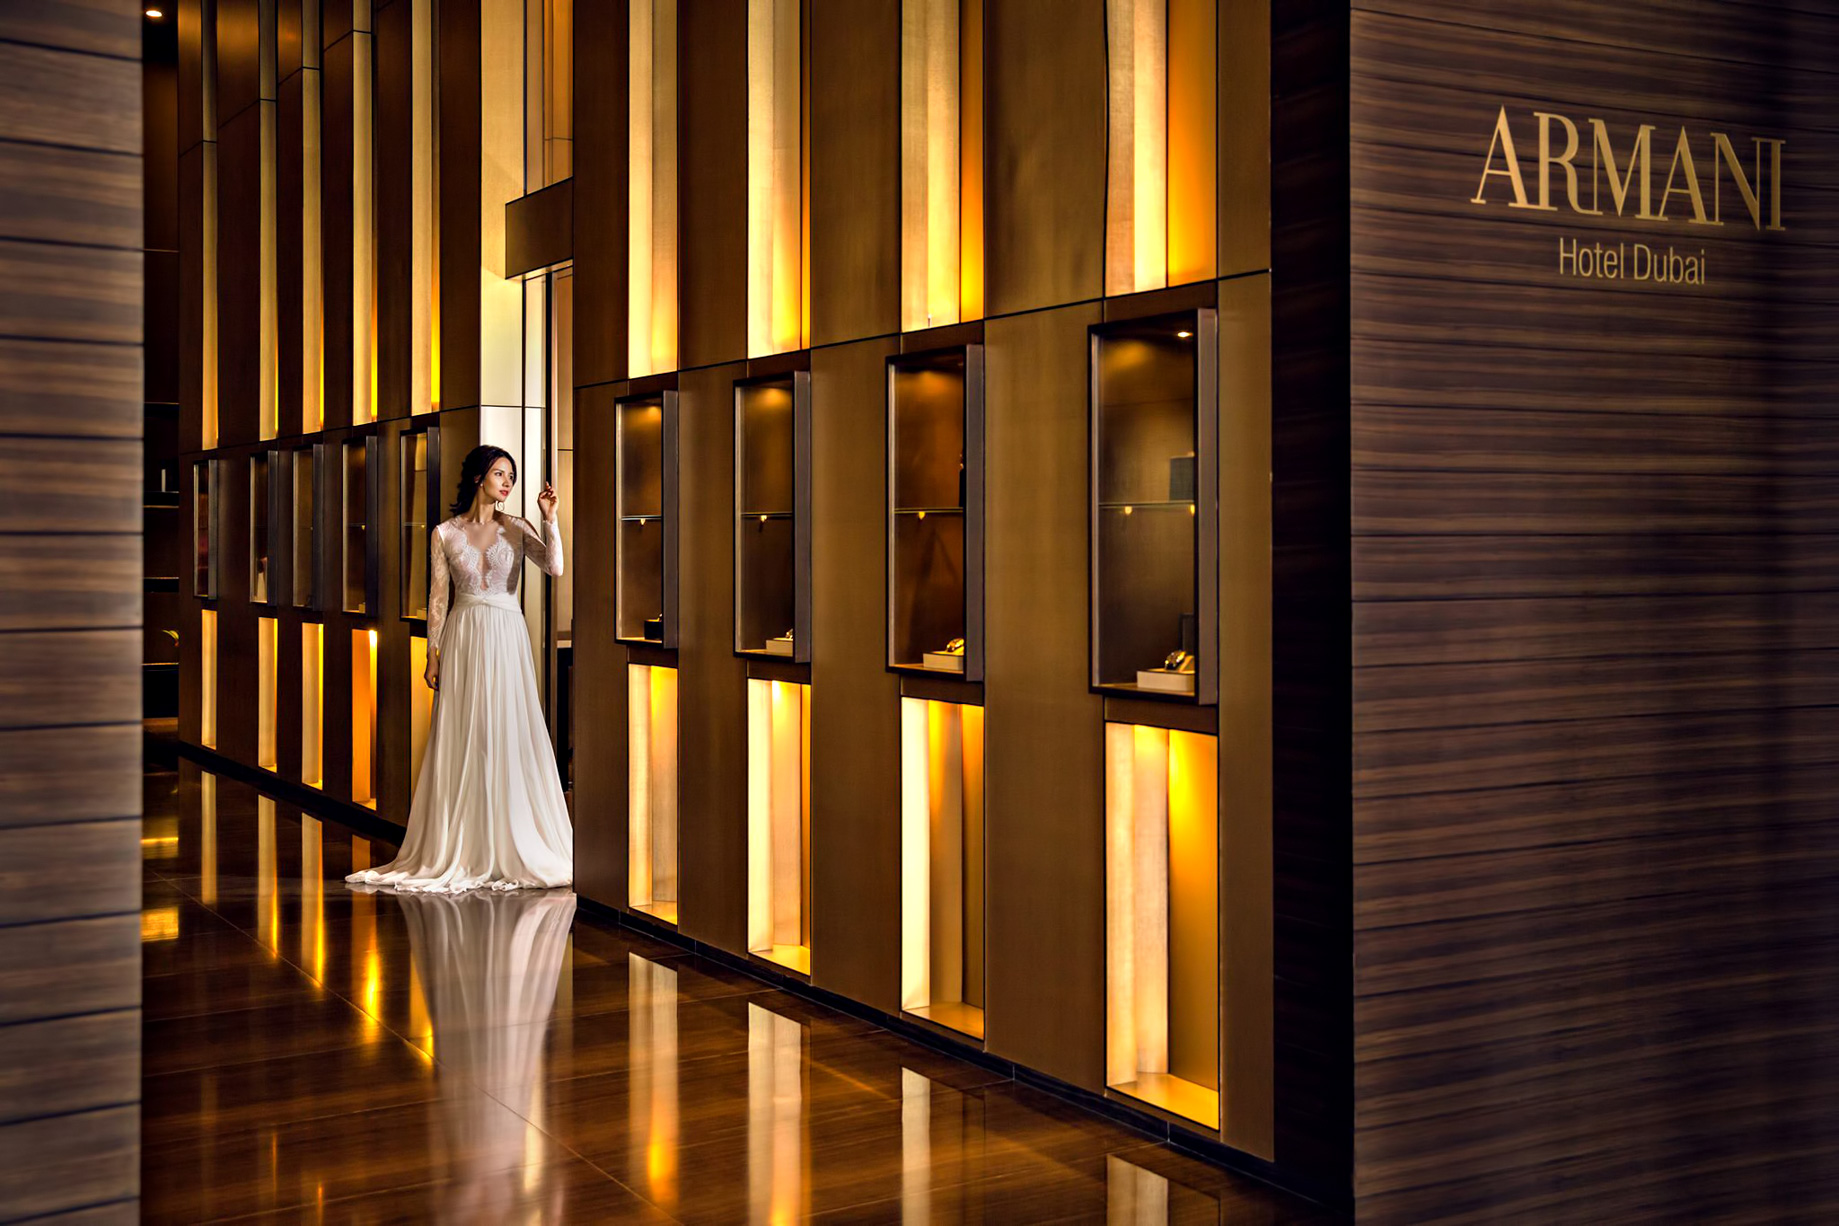 Armani Hotel Dubai – Burj Khalifa, Dubai, UAE – Armani Signature Lifestyle Aesthetic